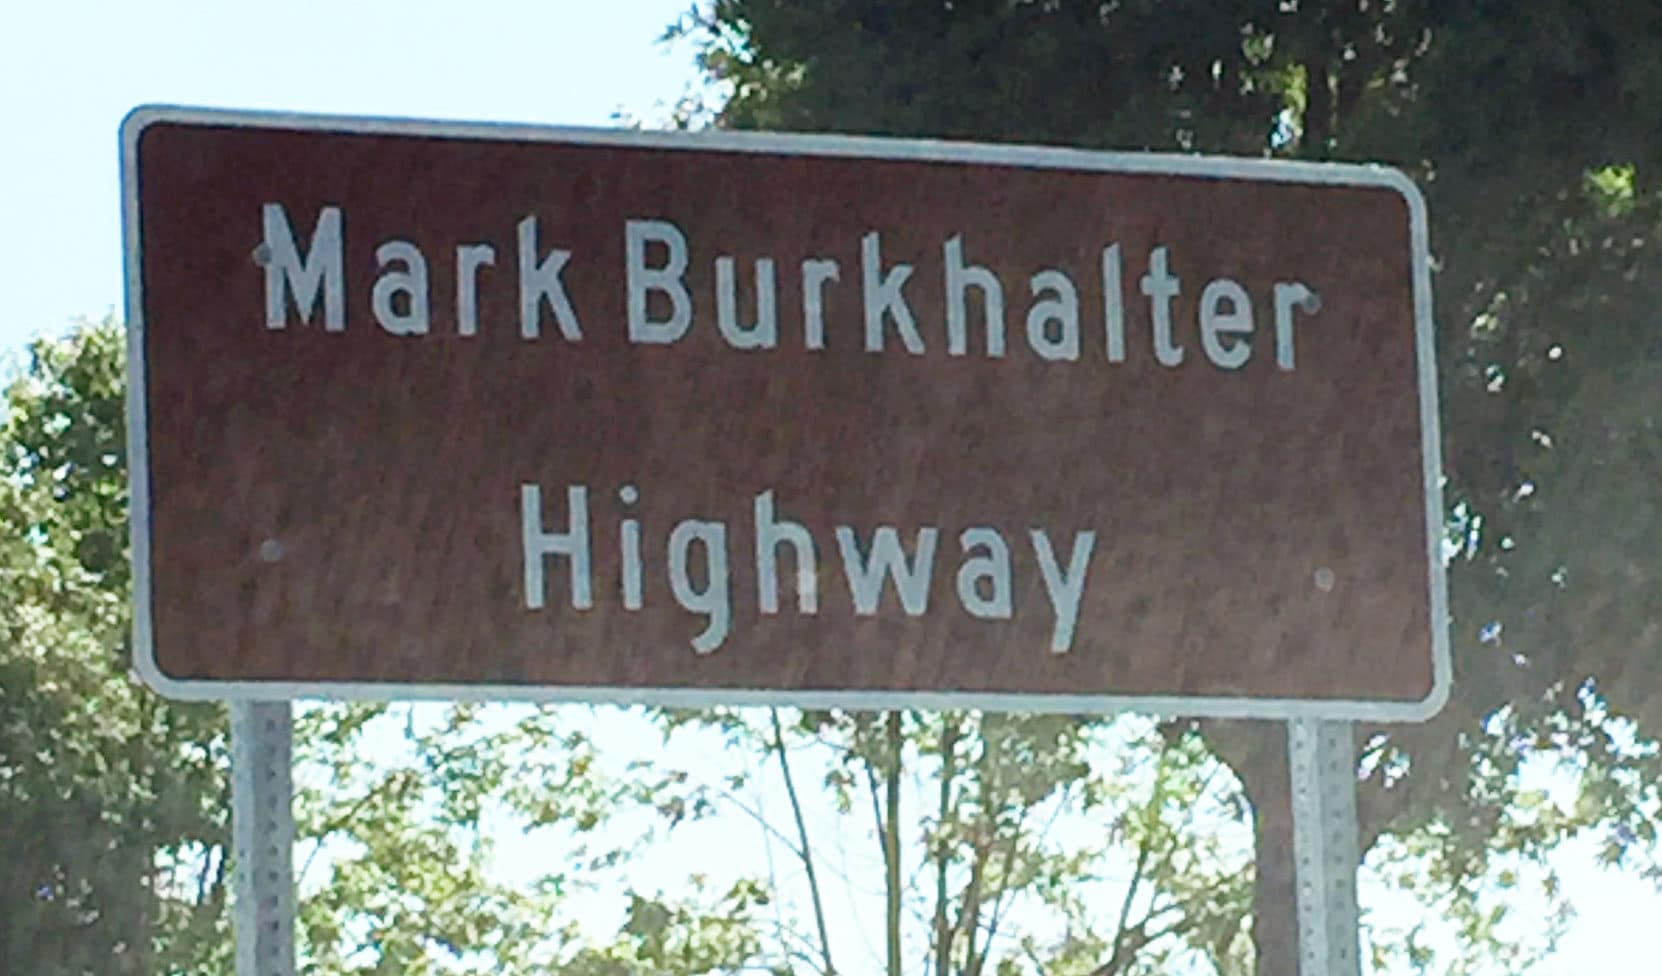 Mark burkhalter highway